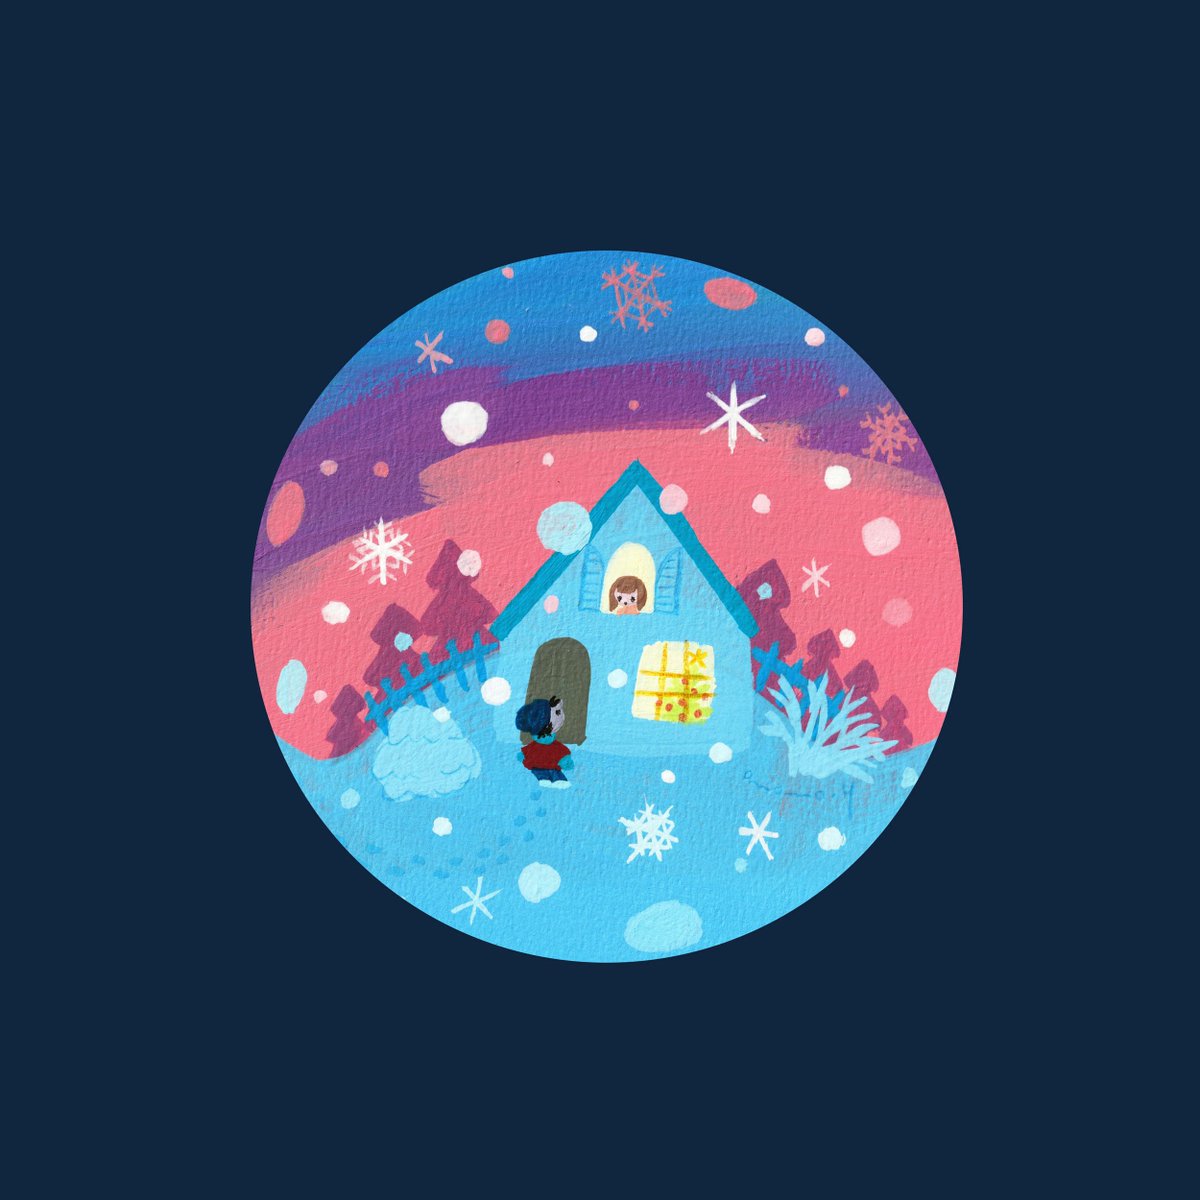 「スノードーム -雪と夕暮れ- 」|大桃洋祐のイラスト